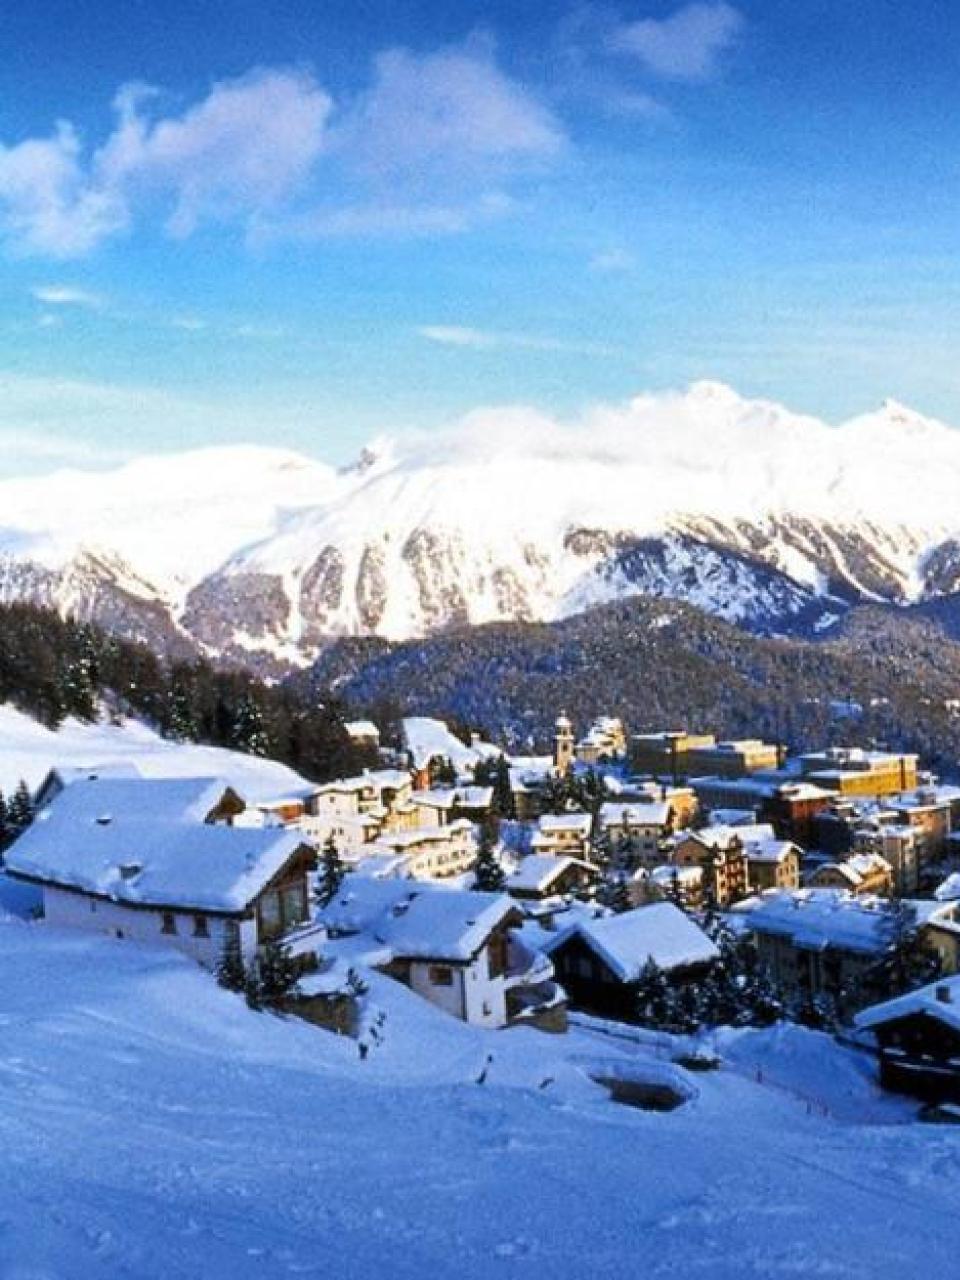 La Svizzera: culla dei Giochi olimpici invernali